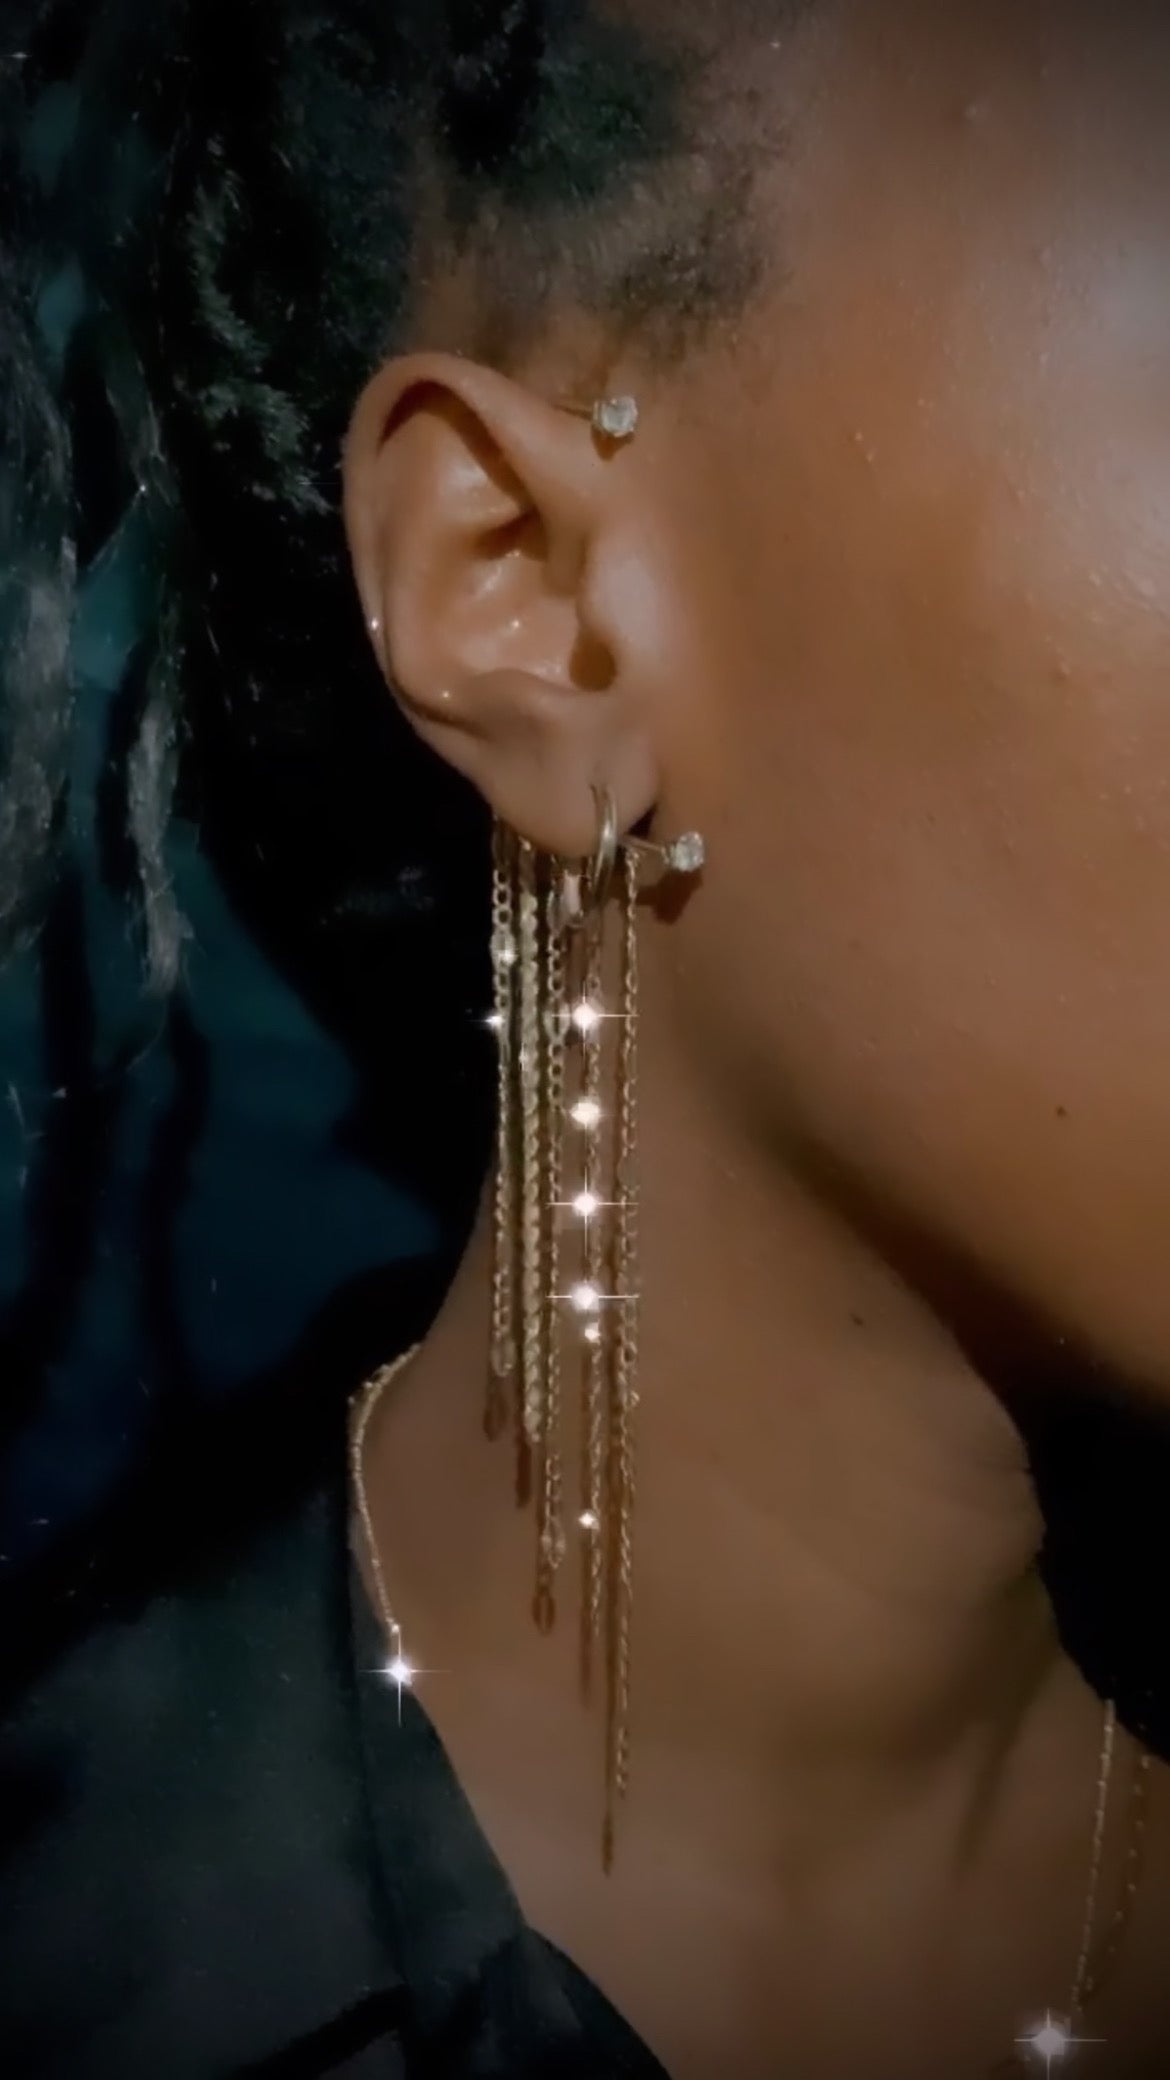 Ear chain on model